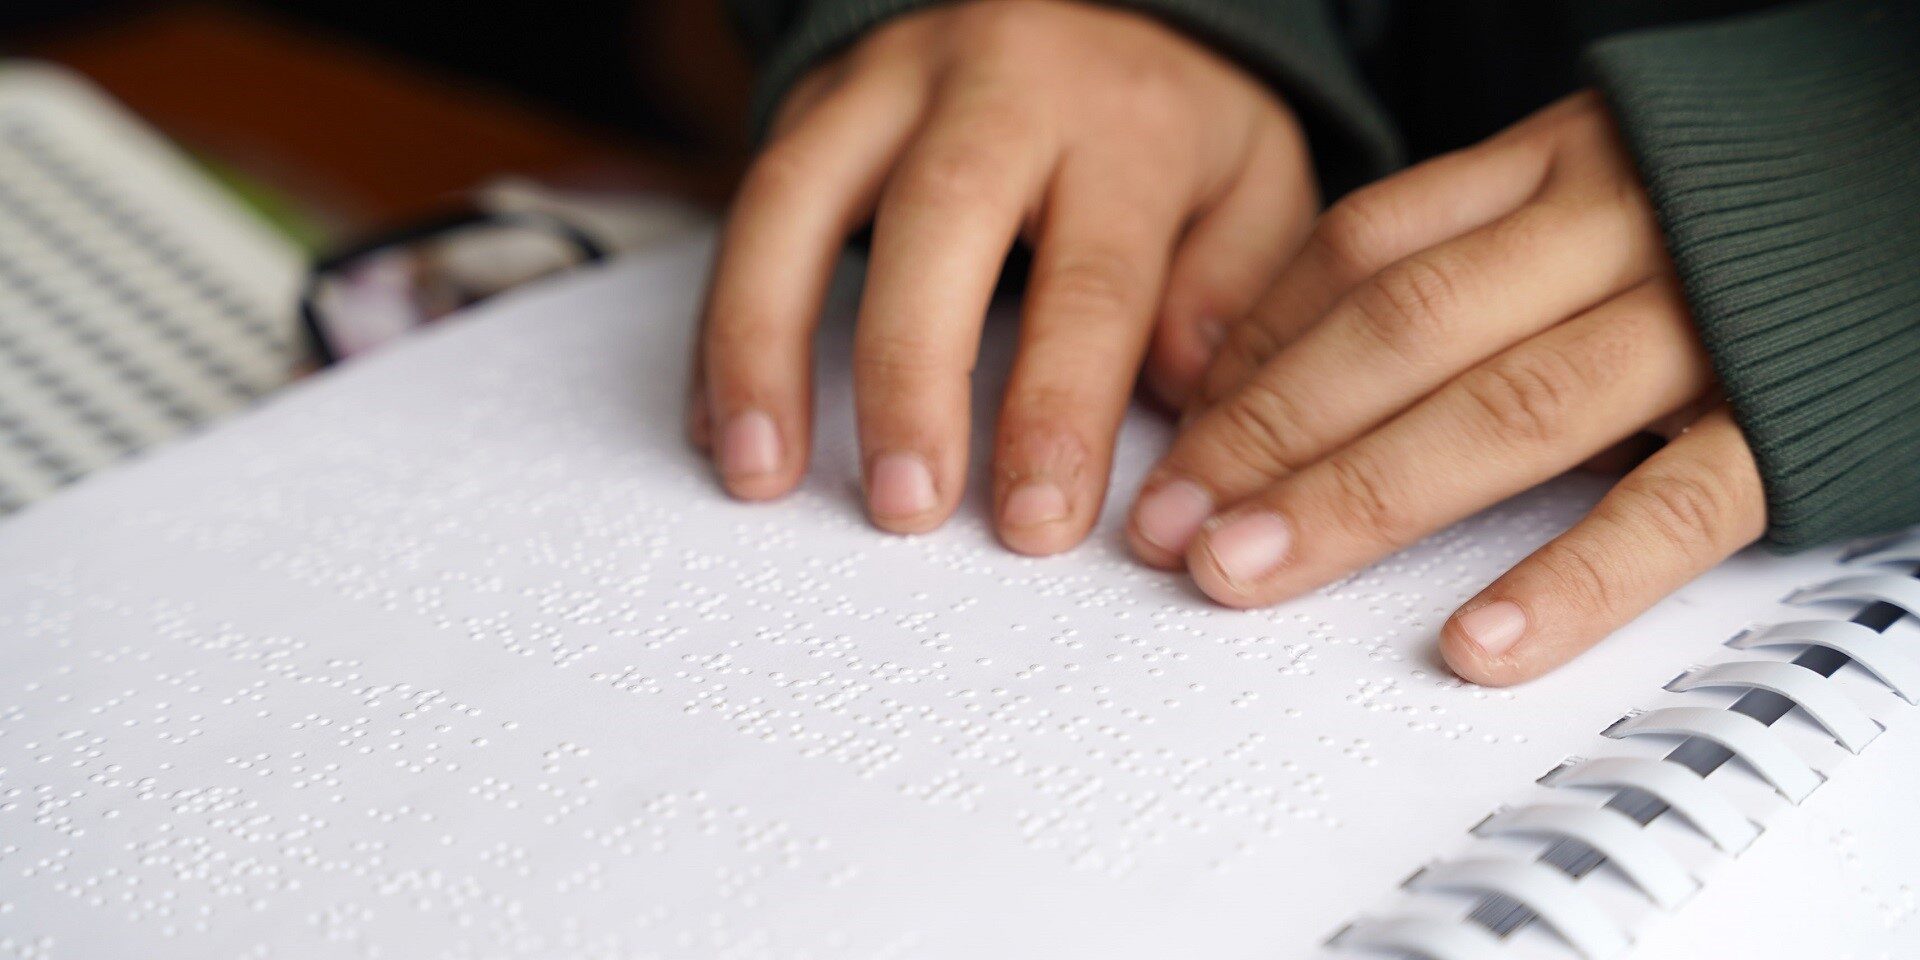 Child's hands on Braille